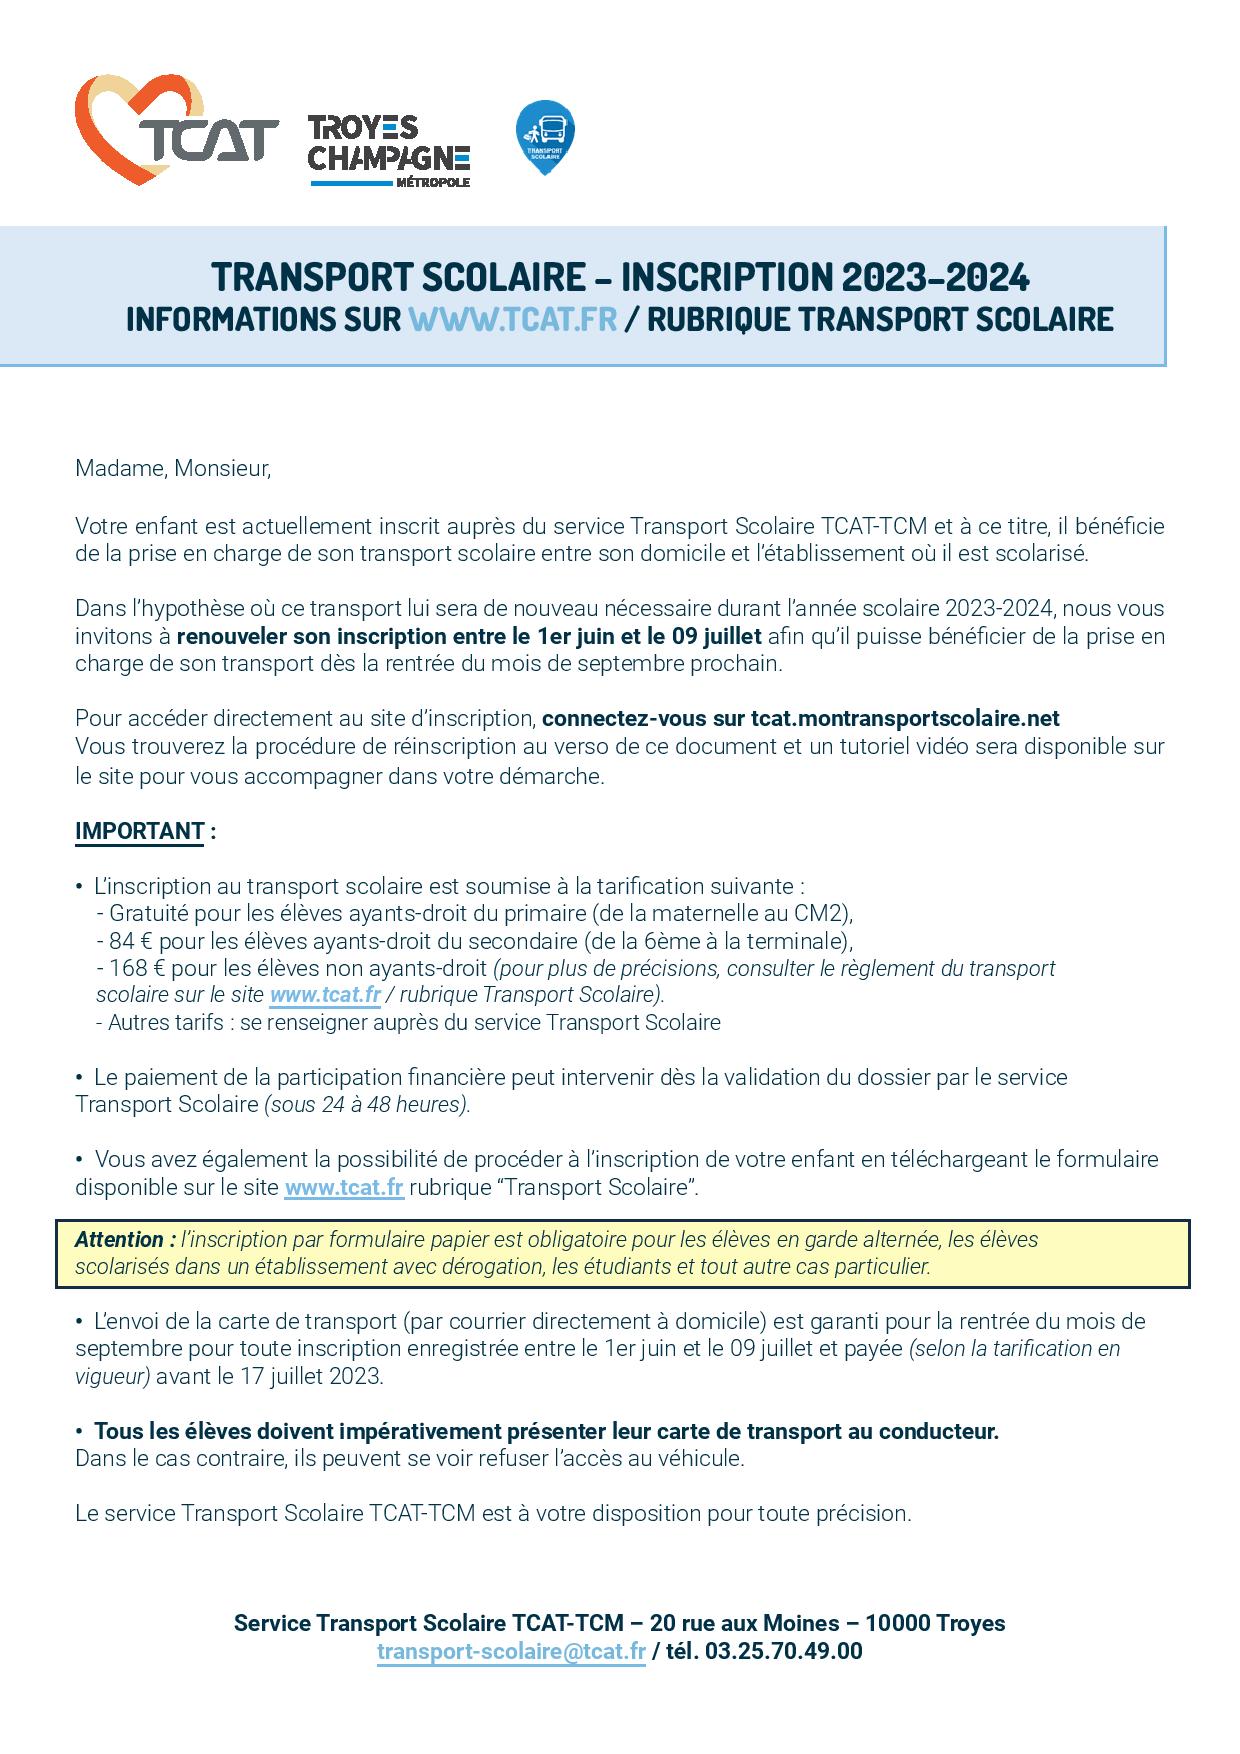 2 - Transports scolaires TCM-TCAT-flyer-reinscription-transcol-version-2023-2024-page-001.jpg